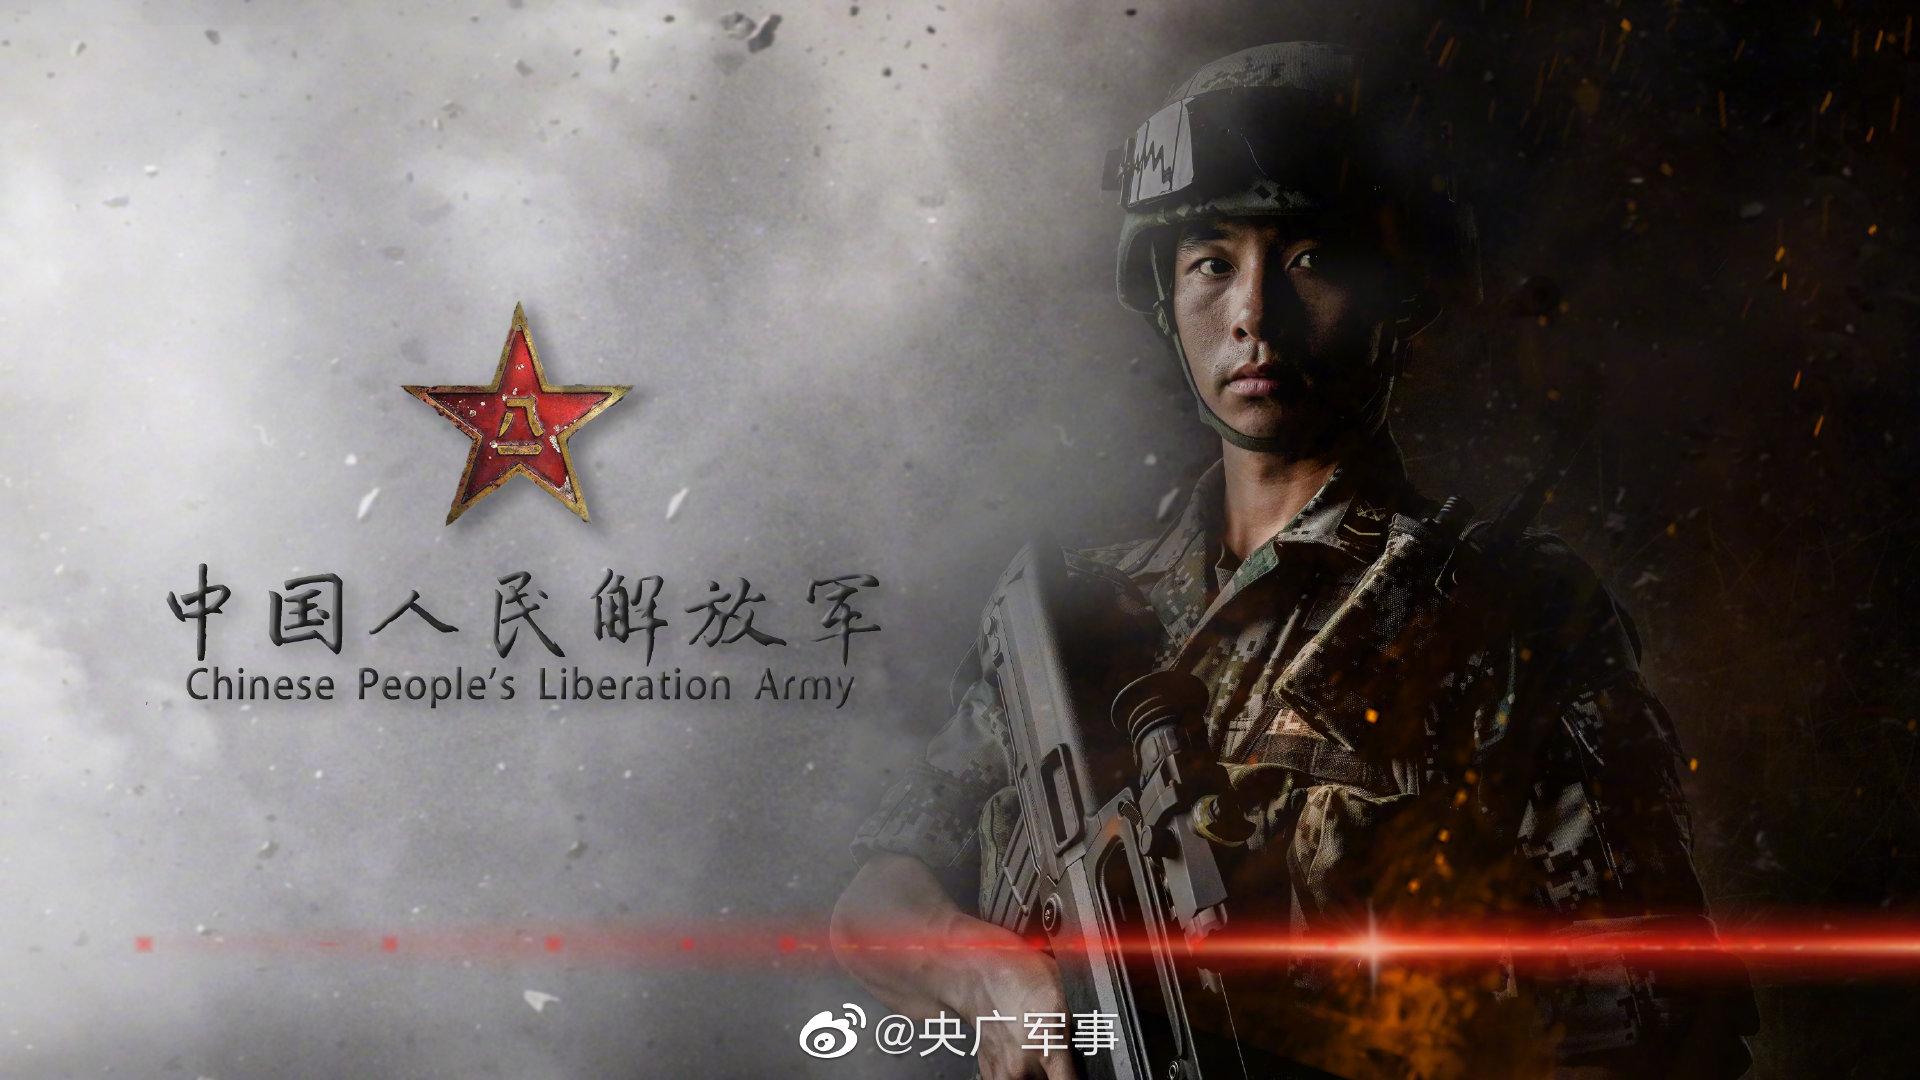 陆军首次组织战役参谋比武 立起研战为战导向 - 中国军网